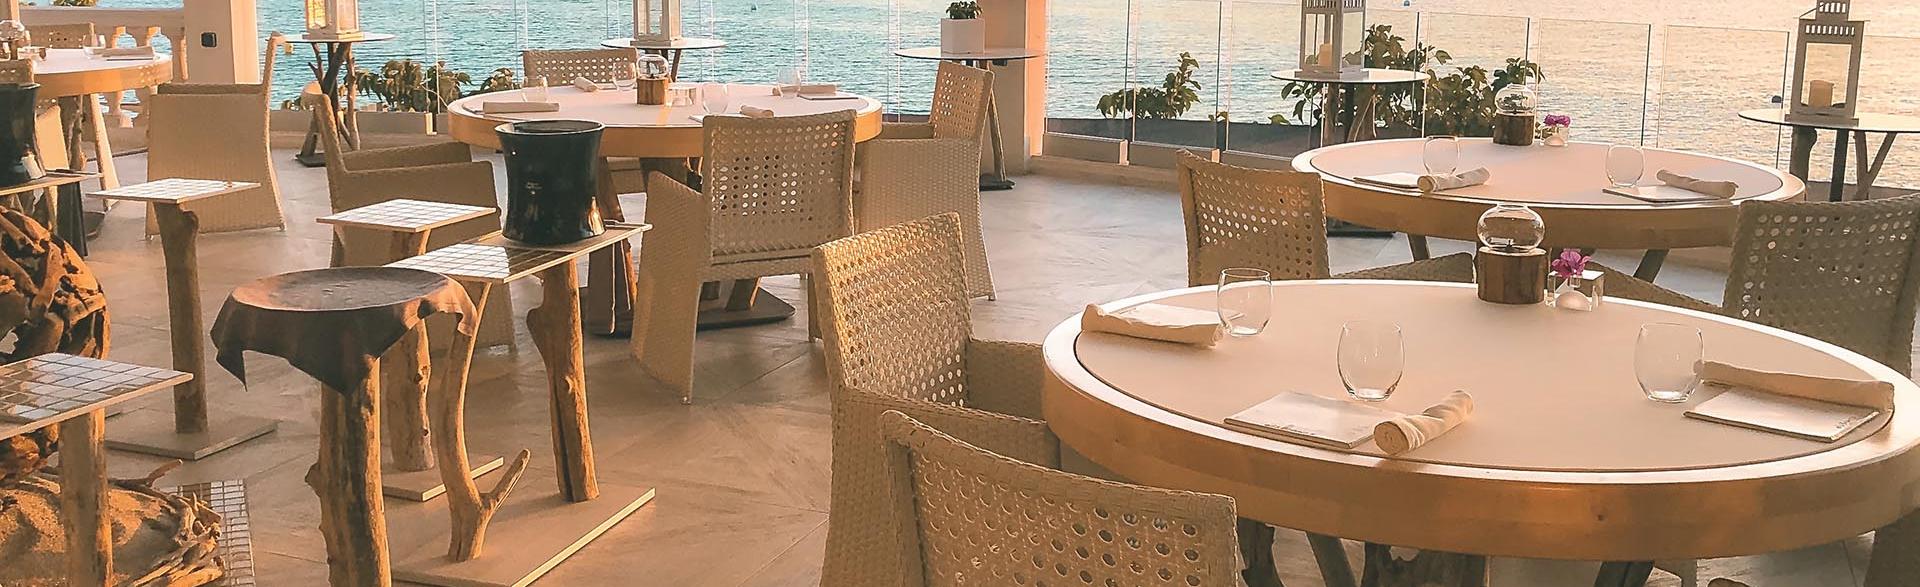 terrassa del restaurant Els Brancs